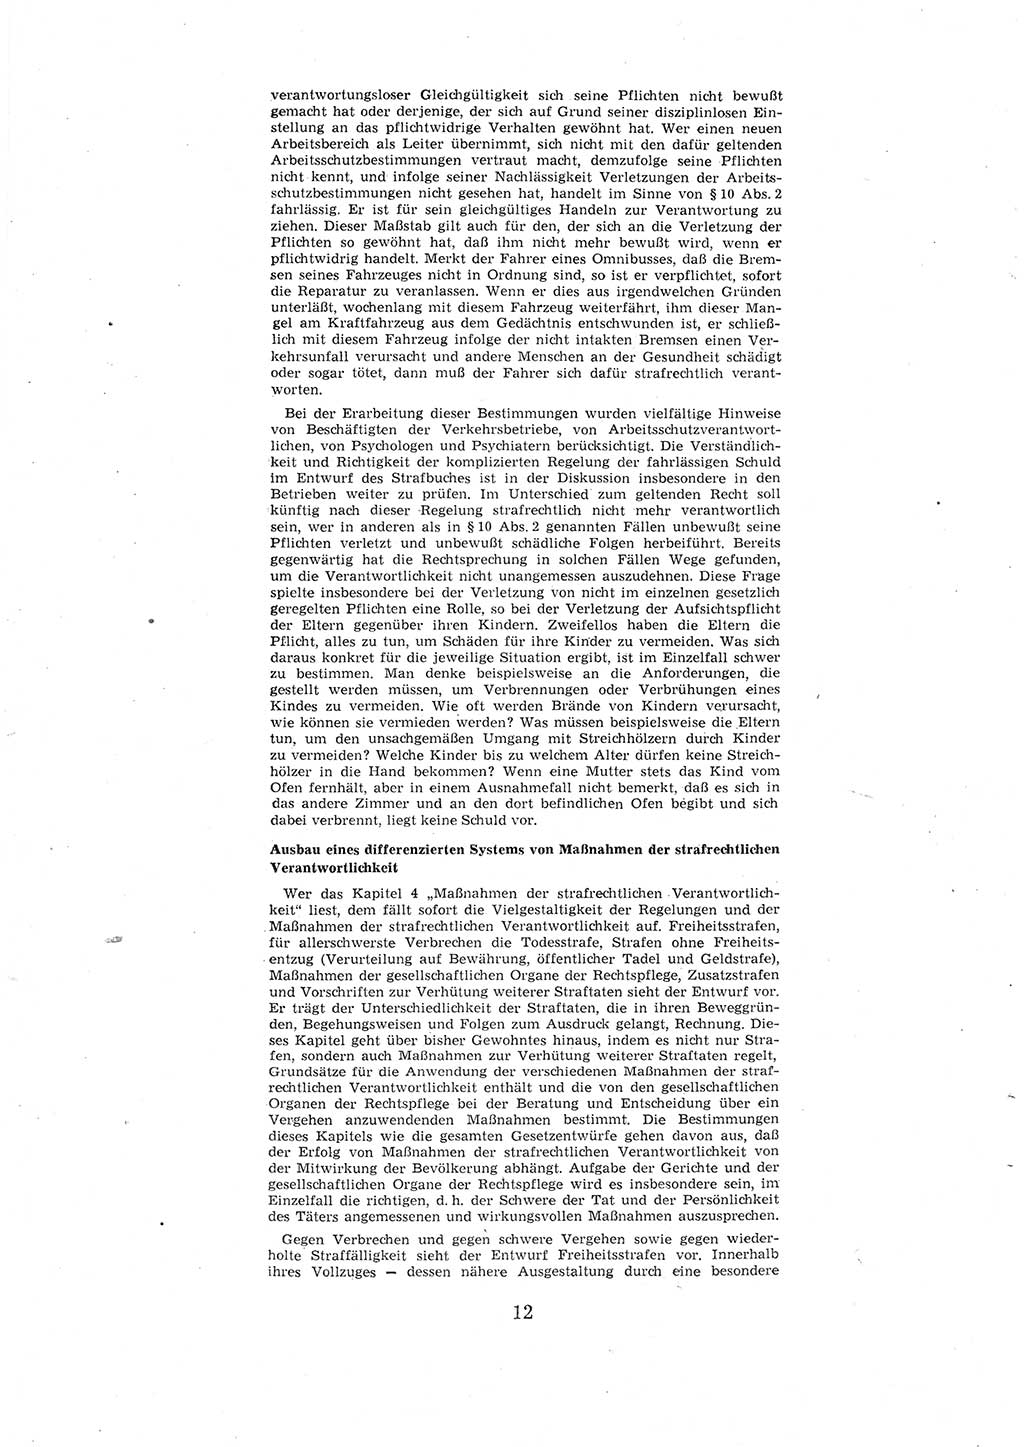 Entwurf des Strafgesetzbuches (StGB) der Deutschen Demokratischen Republik (DDR) 1967, Seite 12 (Entw. StGB DDR 1967, S. 12)